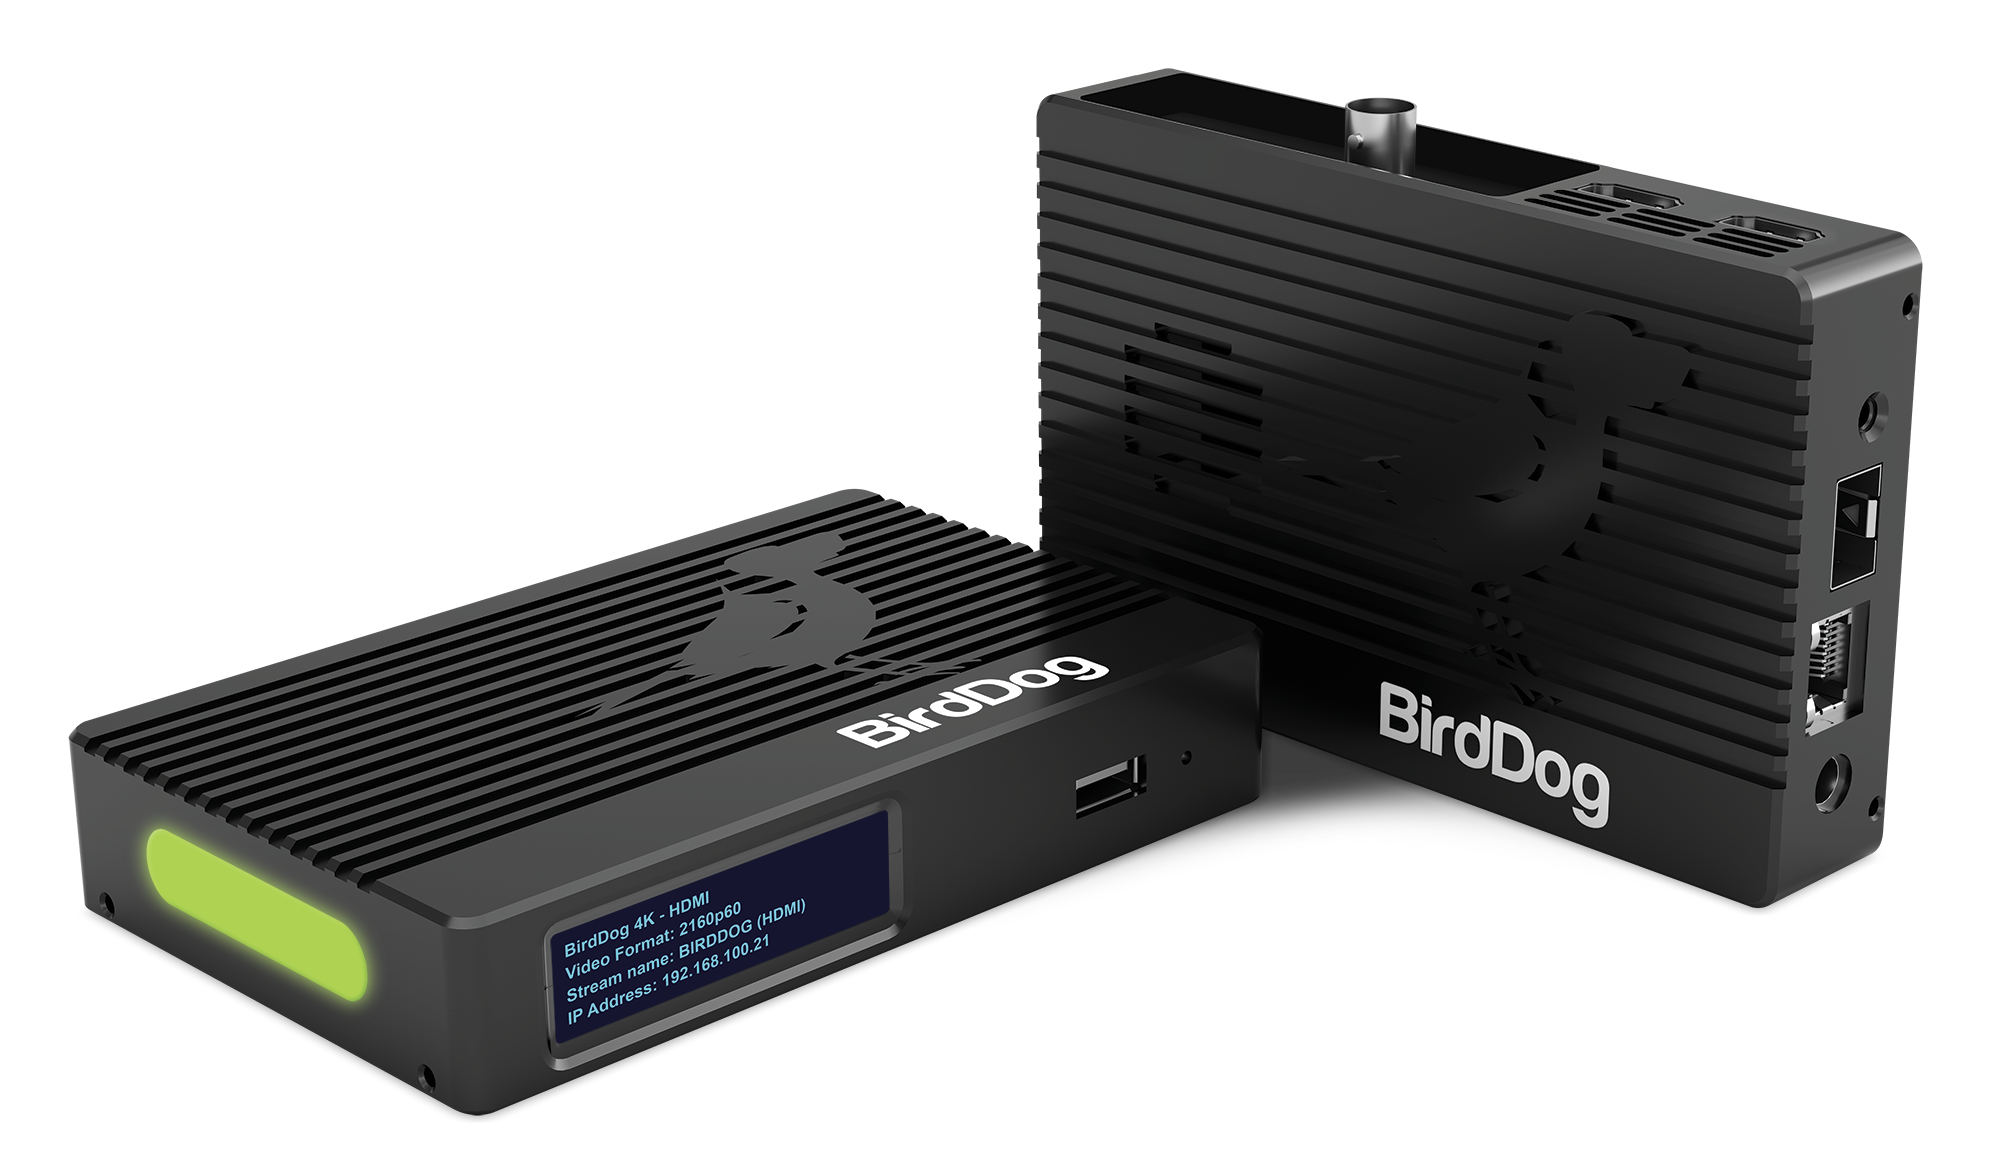 BirdDog 4K HDMI